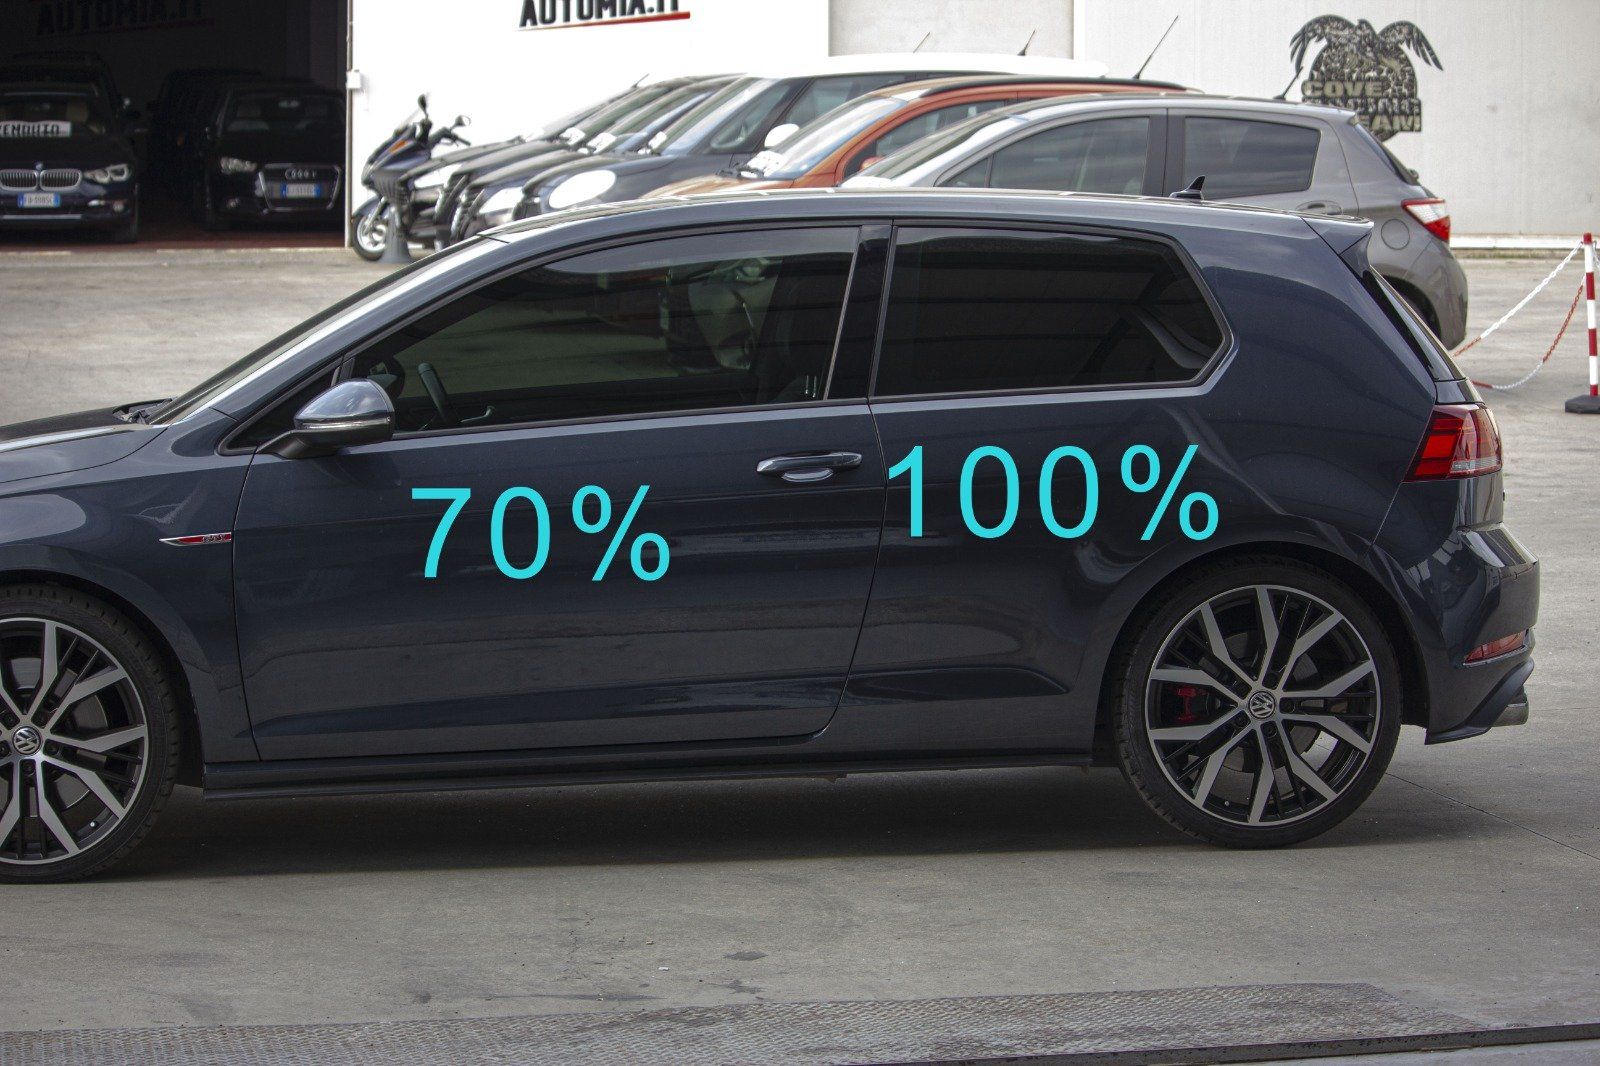 Gradazione  tonalità oscuramento vetri auto con pellicole oscuranti al 100% scuro  Gradazione  tonalità oscuramento vetri auto con pellicole oscuranti al 100% scuro  VW Golf 7